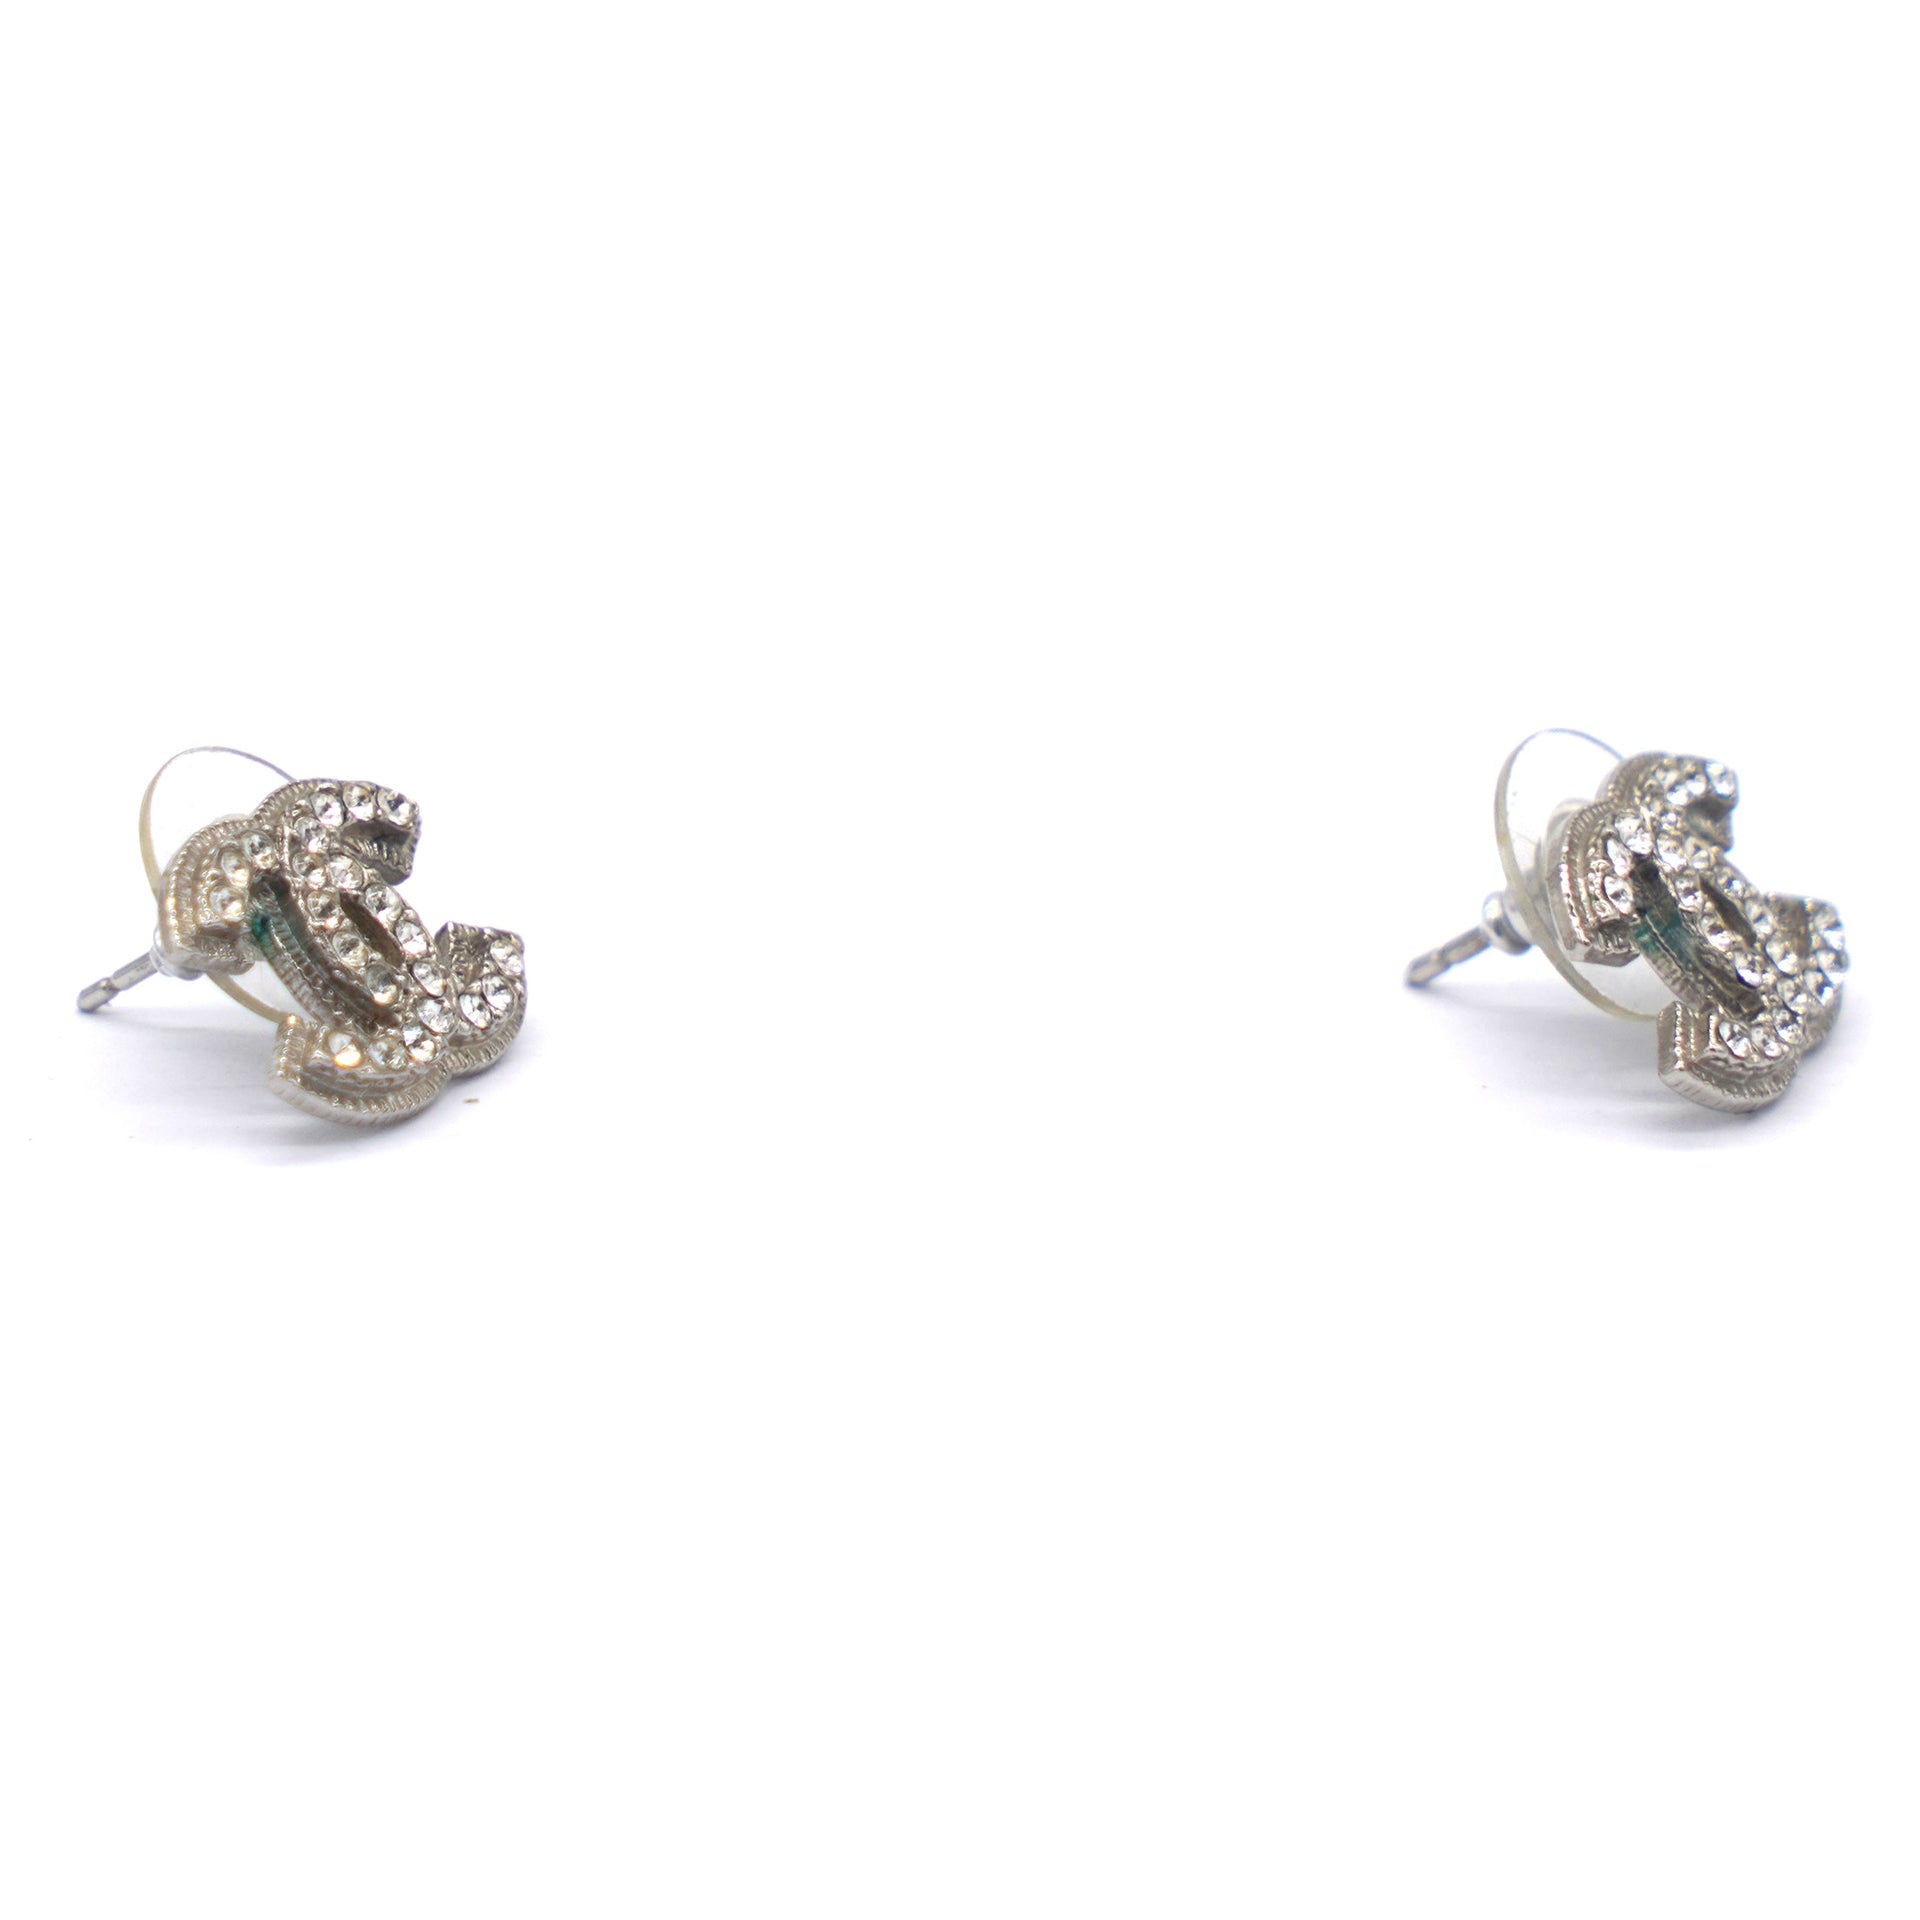 CC Rhinestone earrings